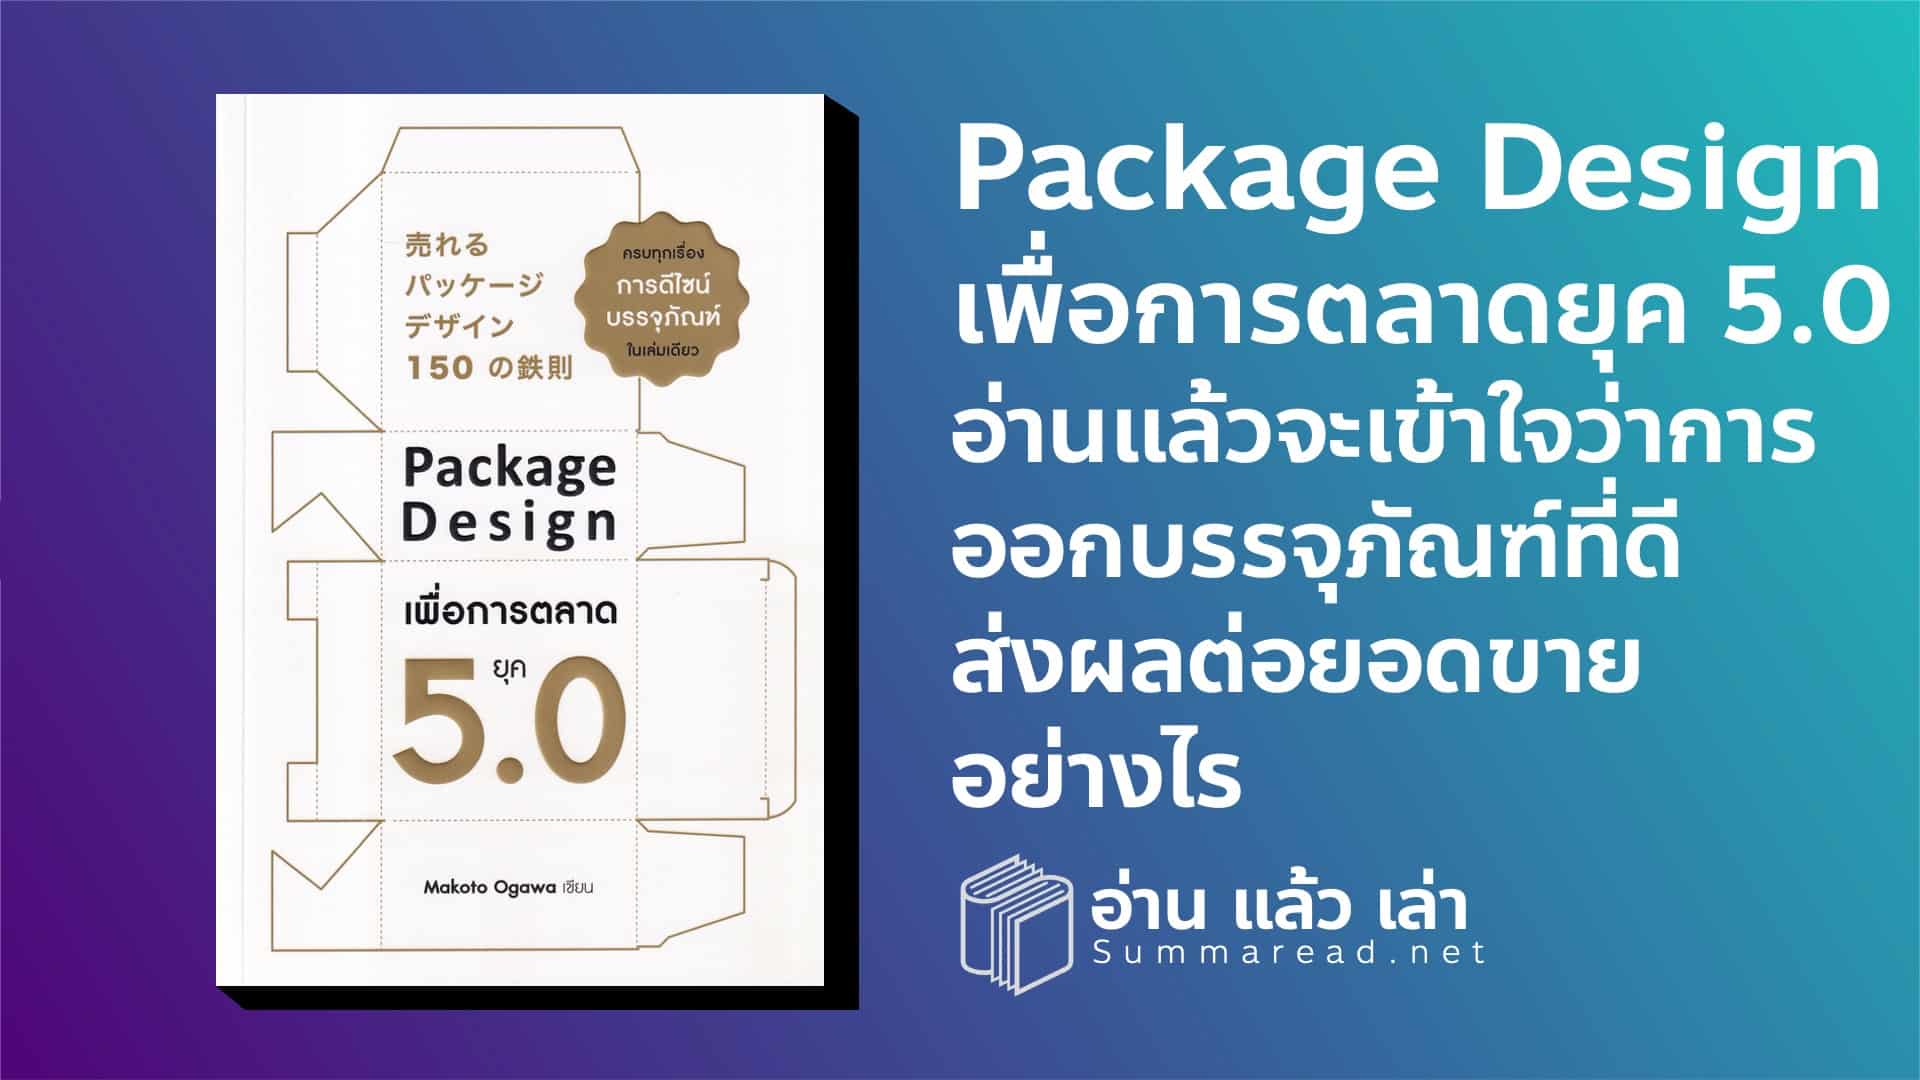 สรุปหนังสือ Package Design เพื่อการตลาดยุค 5.0 ครบทุกเรื่องการดีไซน์บรรจุภัณฑ์ในเล่มเดียว Makato Ogawa เขียน สำนักพิมพ์ Nation Books